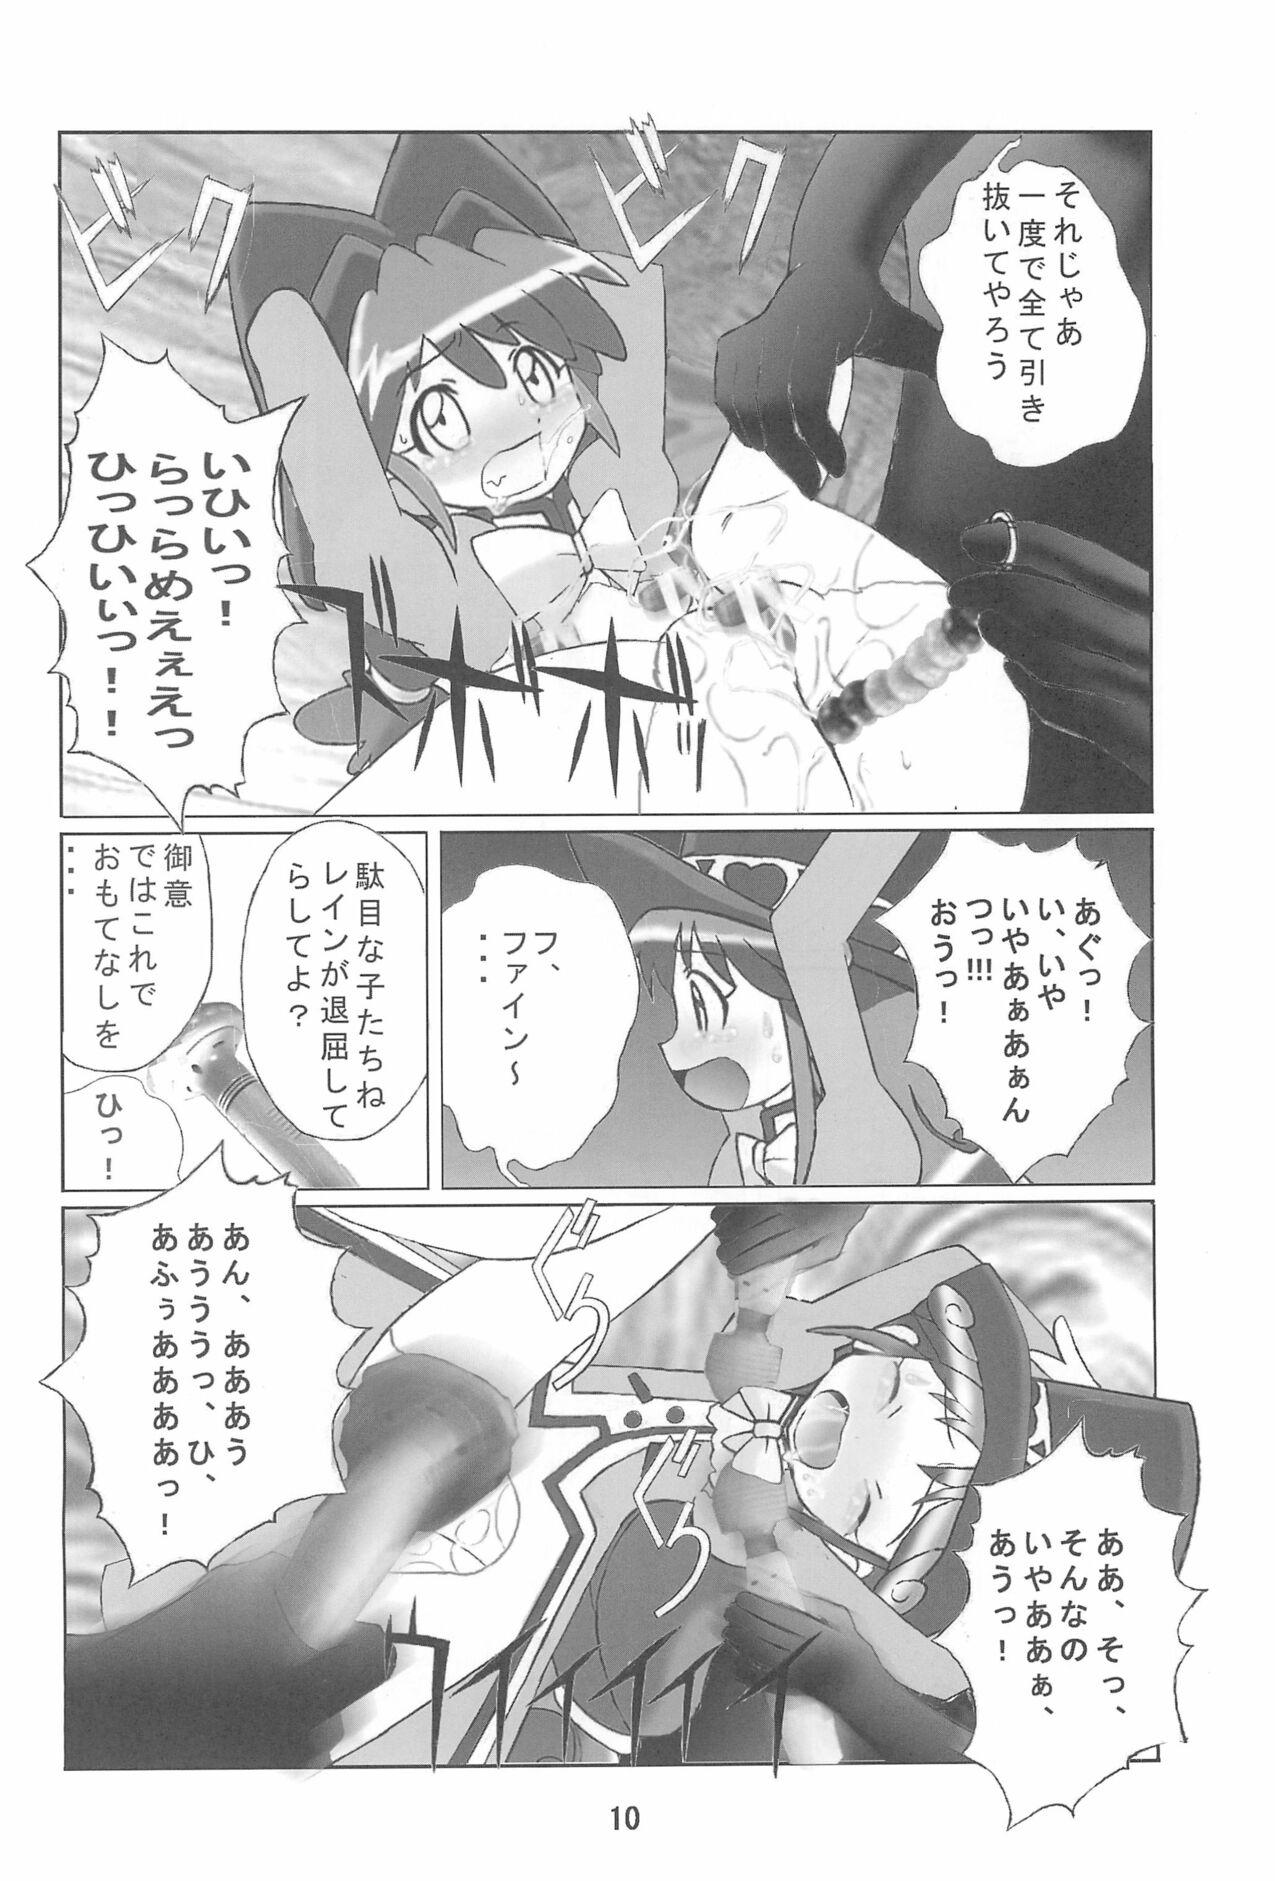 Spycam Kuuronziyou 14 - Fushigiboshi no futagohime | twin princesses of the wonder planet Amature Sex Tapes - Page 10